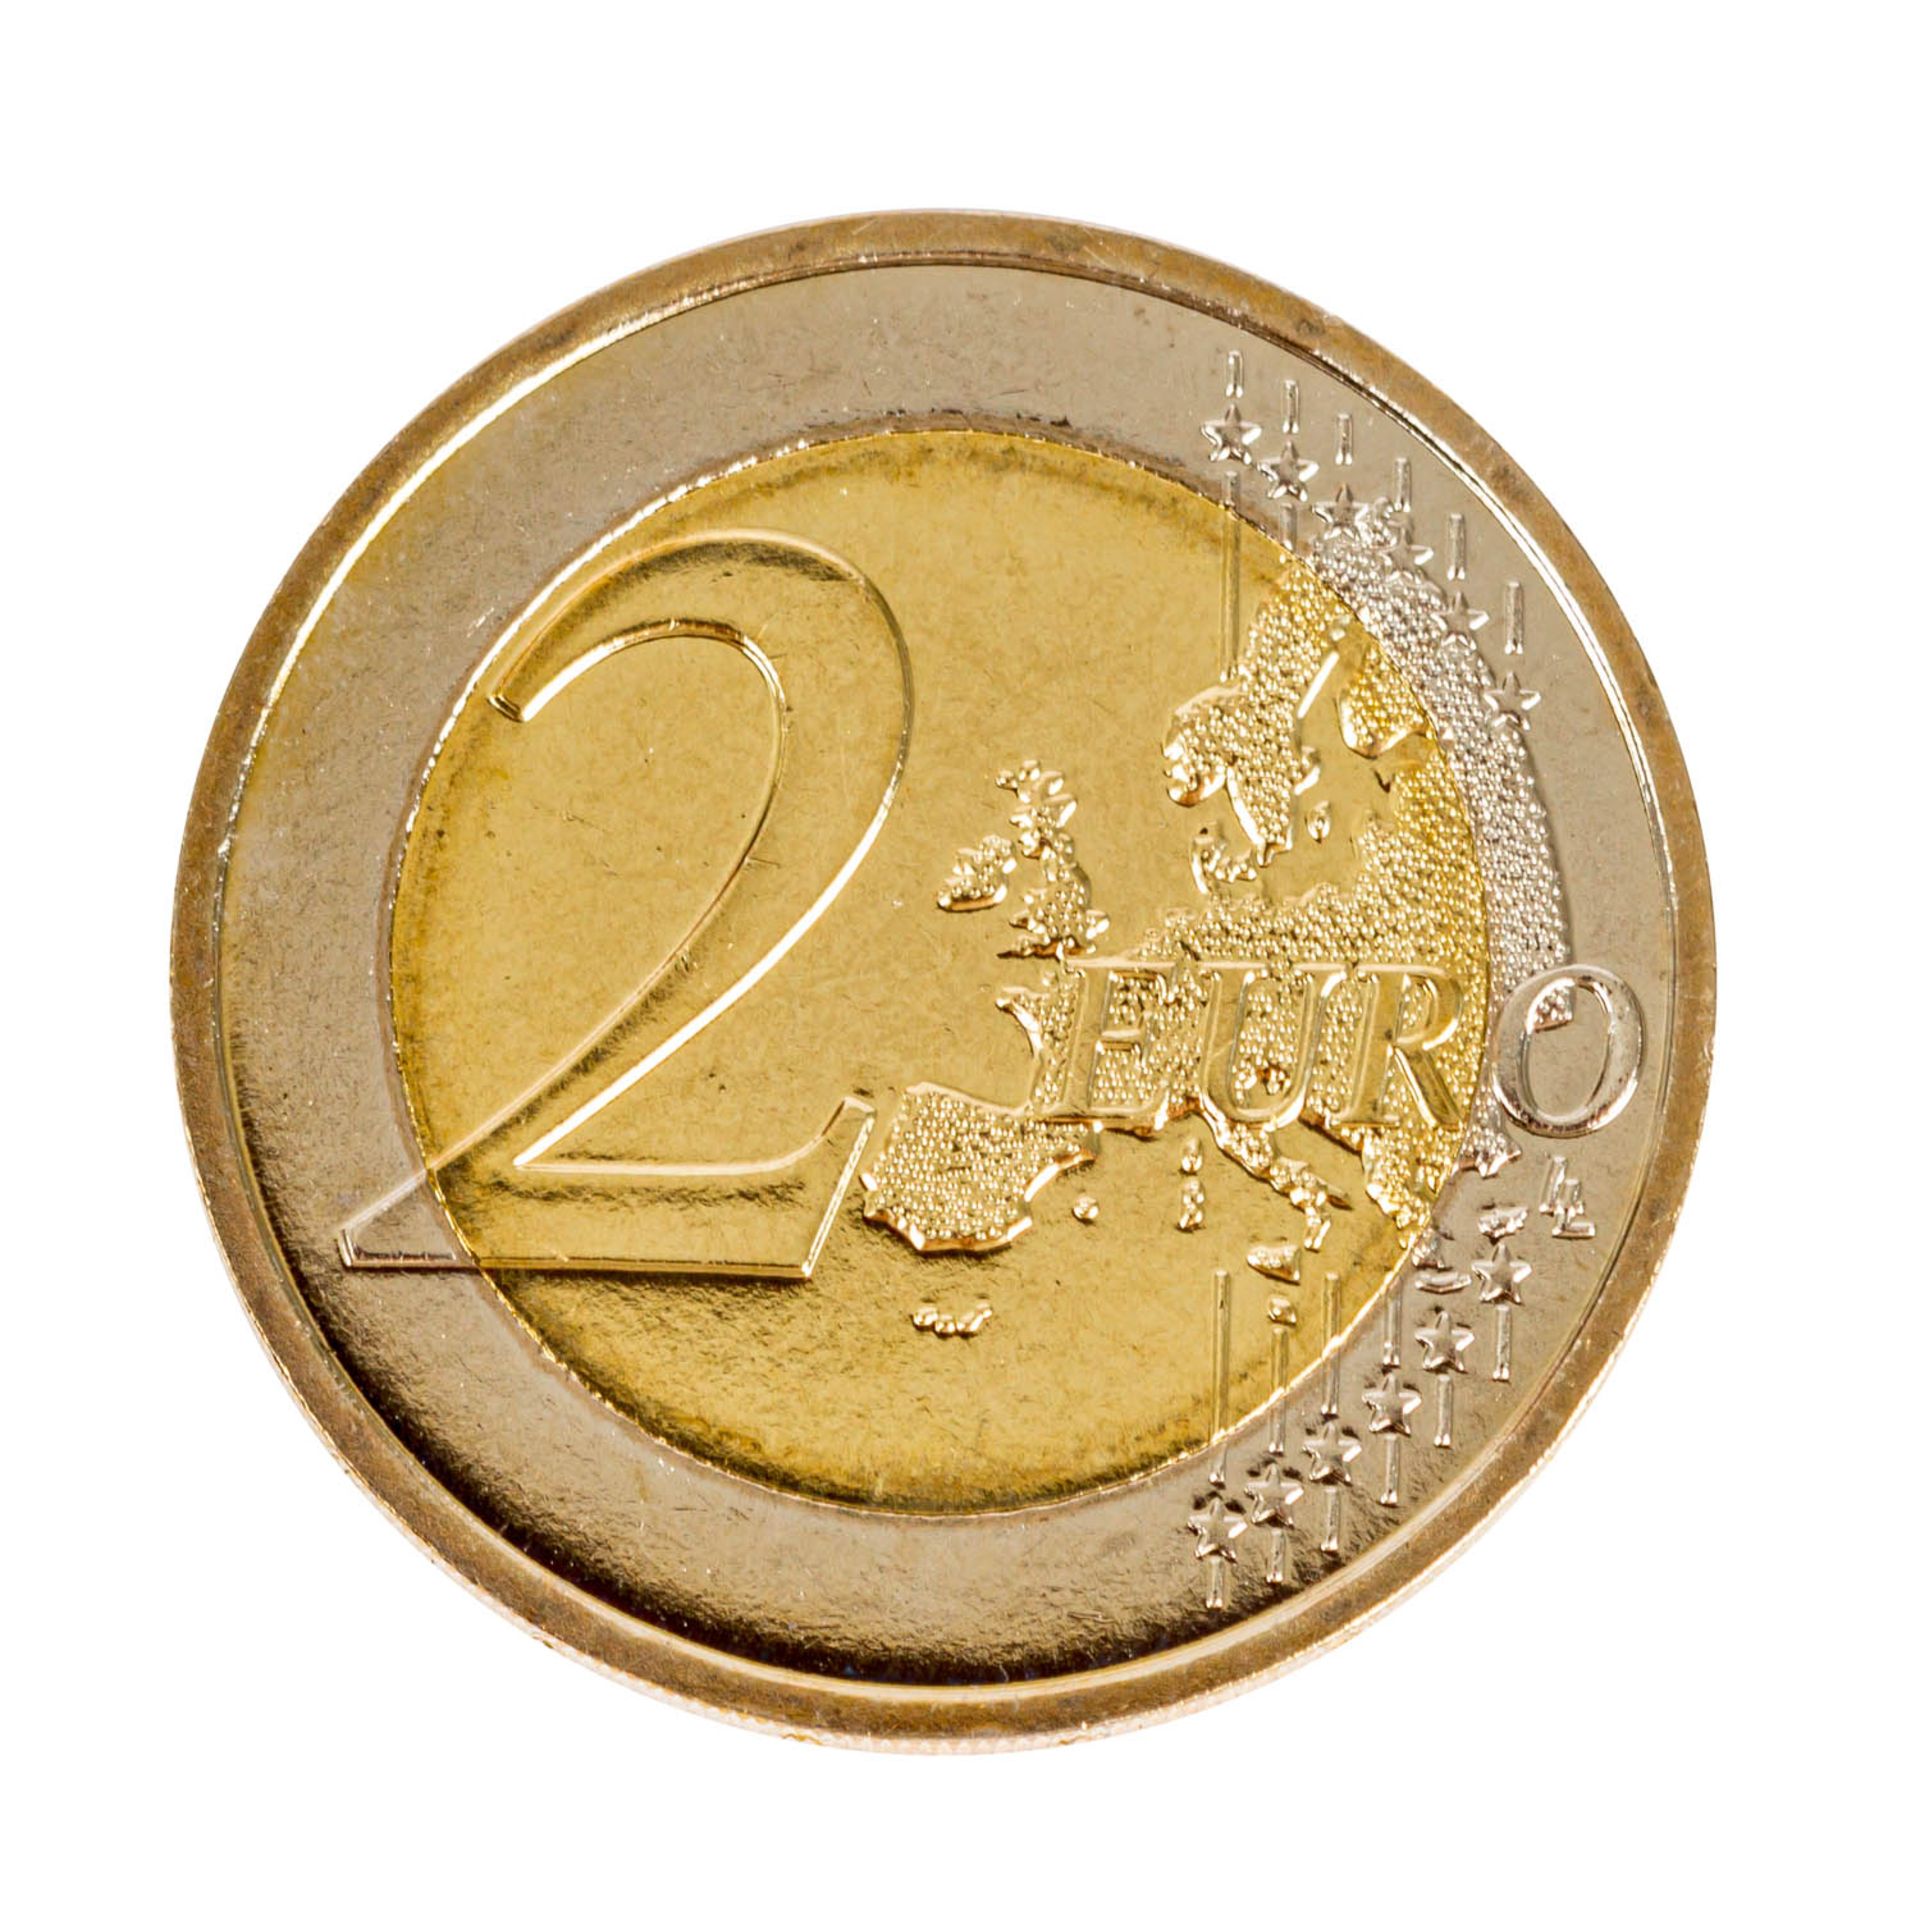 Monako / Monaco - 2 Euro 2007, Motiv Grace Kelly, die am meisten gesuchte 2 Euro Münze, auf den 25. - Bild 2 aus 3